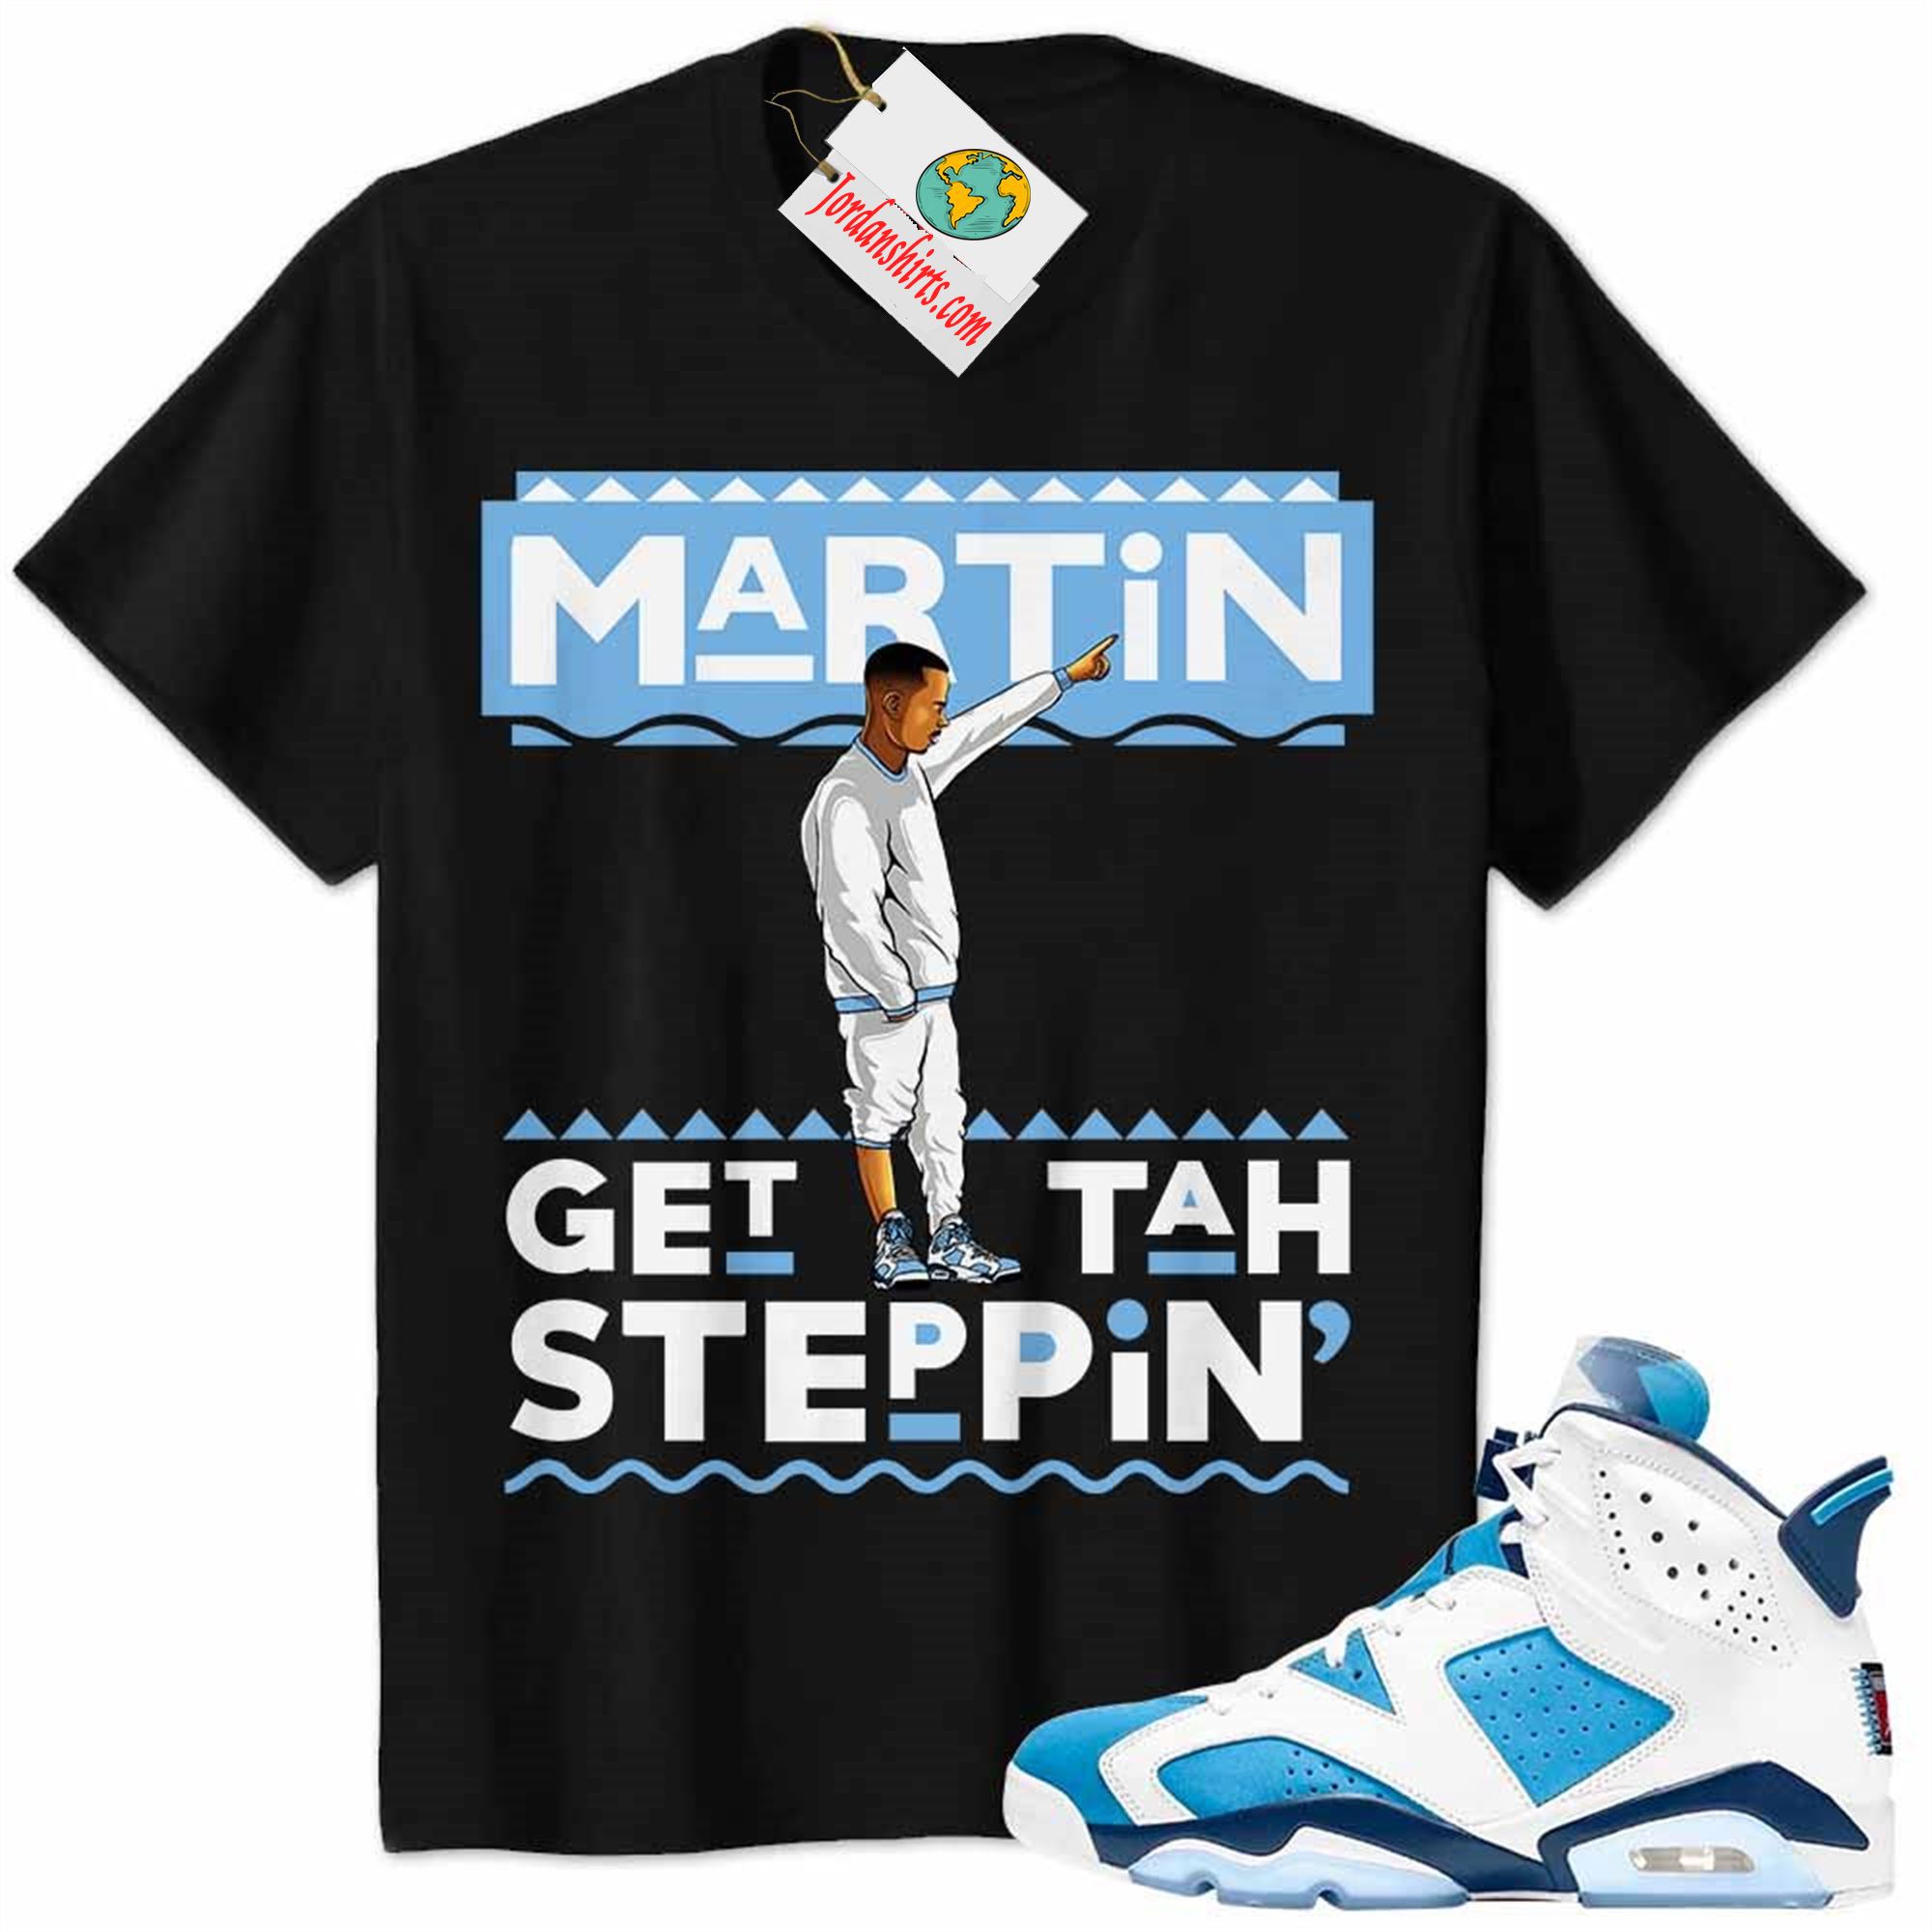 Jordan 6 Shirt, Jordan 6 Unc Shirt Martin Get Tah Steppin Black Size Up To 5xl